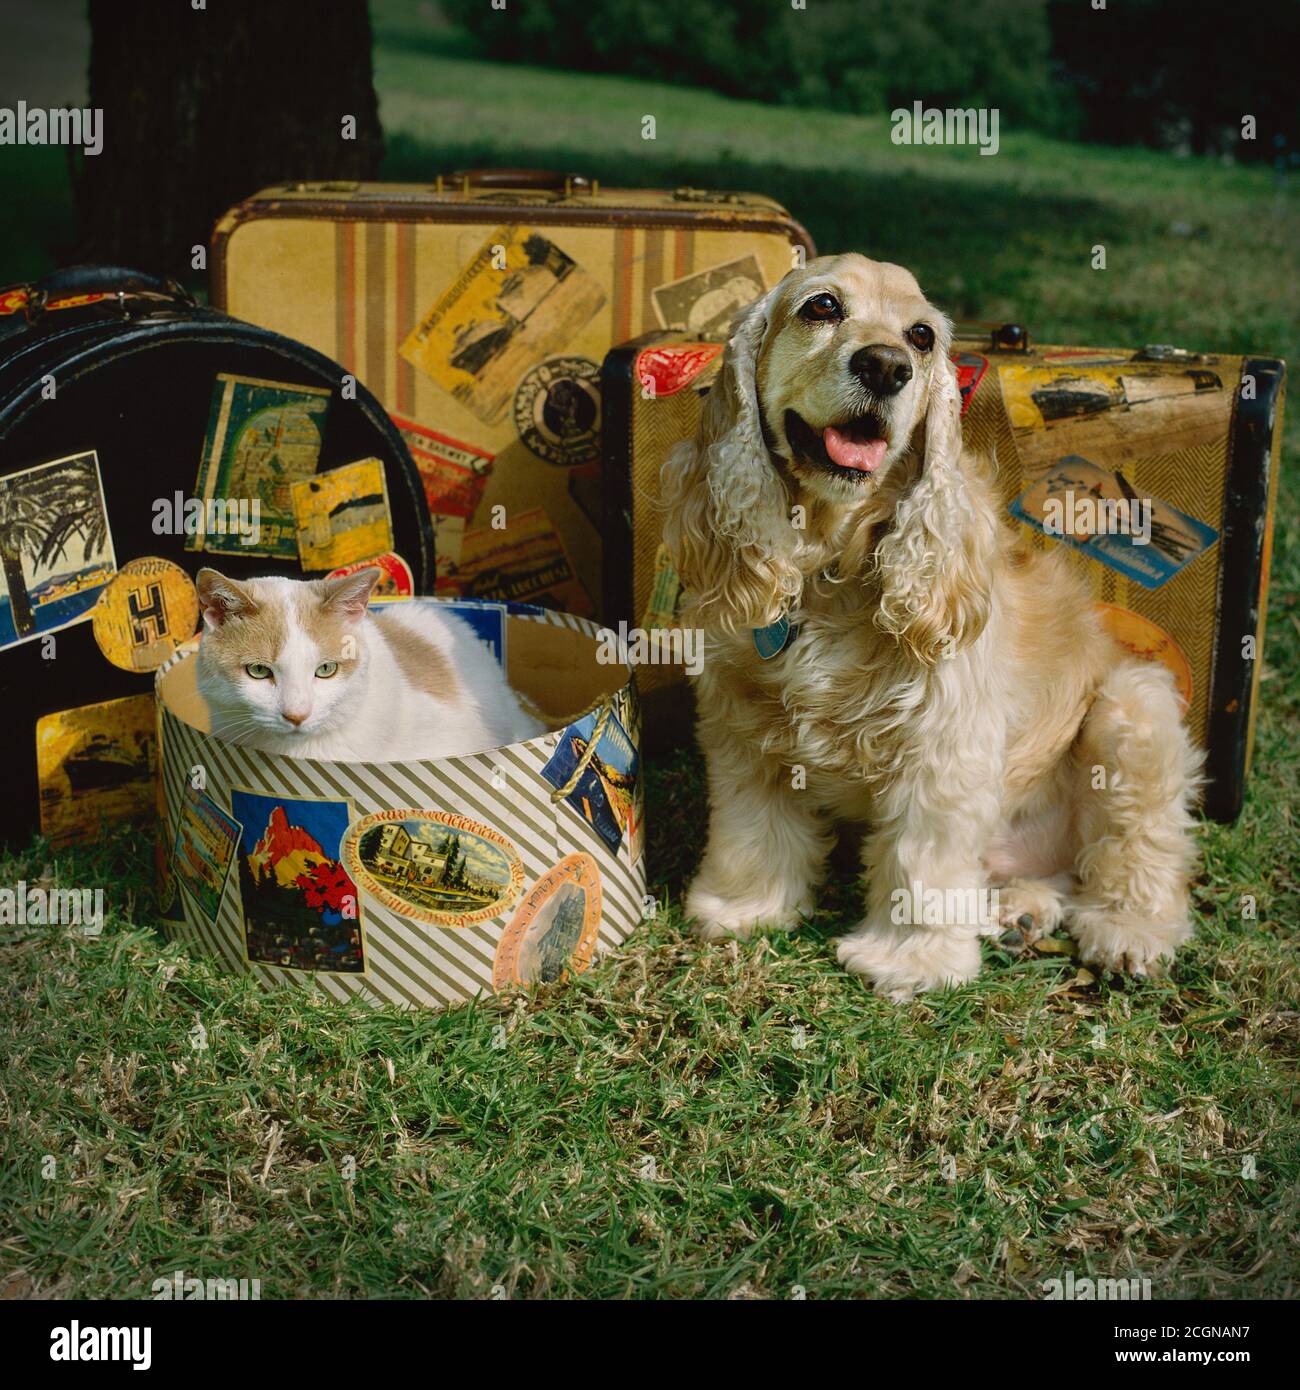 Un chien d'épagneul cocker et son ami de chat kitty sont des compagnons de voyage. Ils ont leurs valises emballées et prêtes pour leur prochaine aventure. Banque D'Images